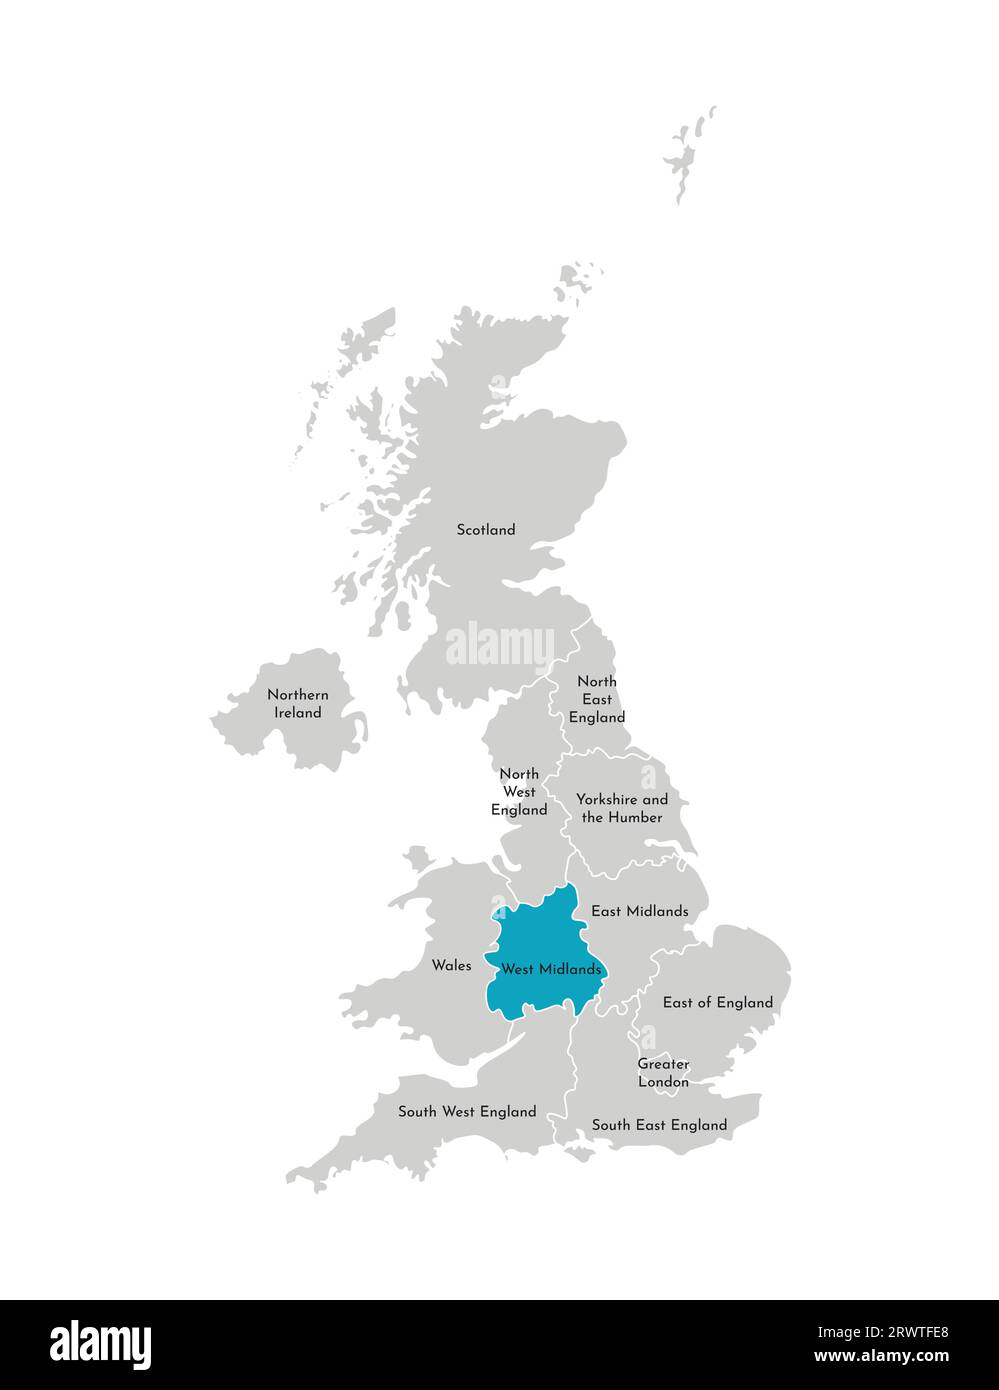 Vektor-isolierte Illustration einer vereinfachten Verwaltungskarte des Vereinigten Königreichs (UK). Blaue Form der West Midlands. Grenzen und Namen der Region Stock Vektor